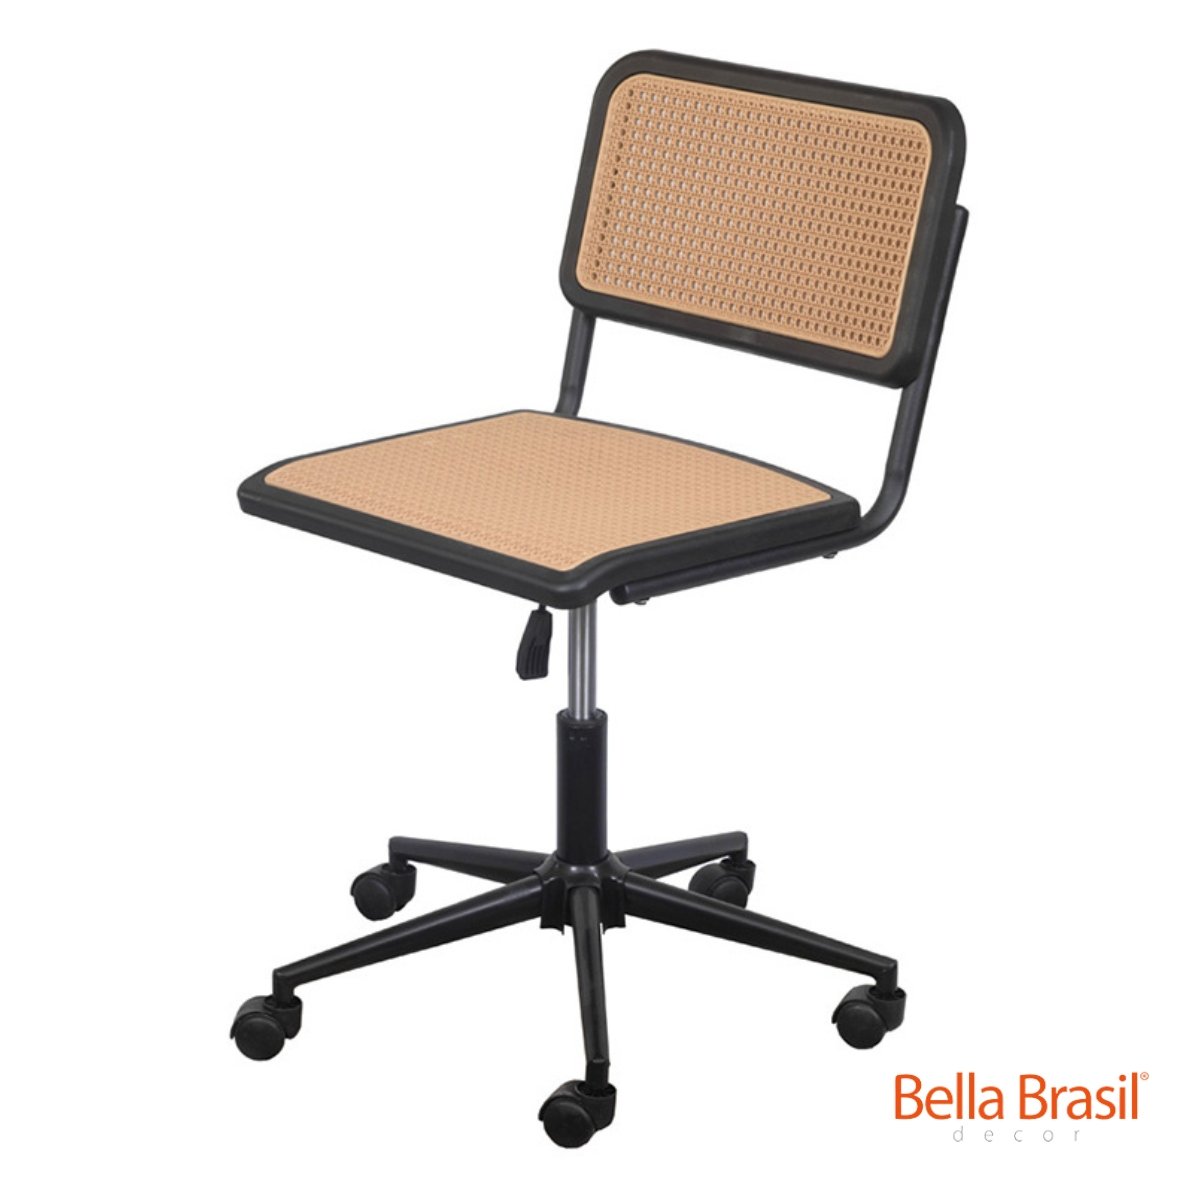 Cadeira Vera Base Giratória sem Braço - Bella Brasil Decor 126 - Bella Brasil Decor Preto/bege - 1